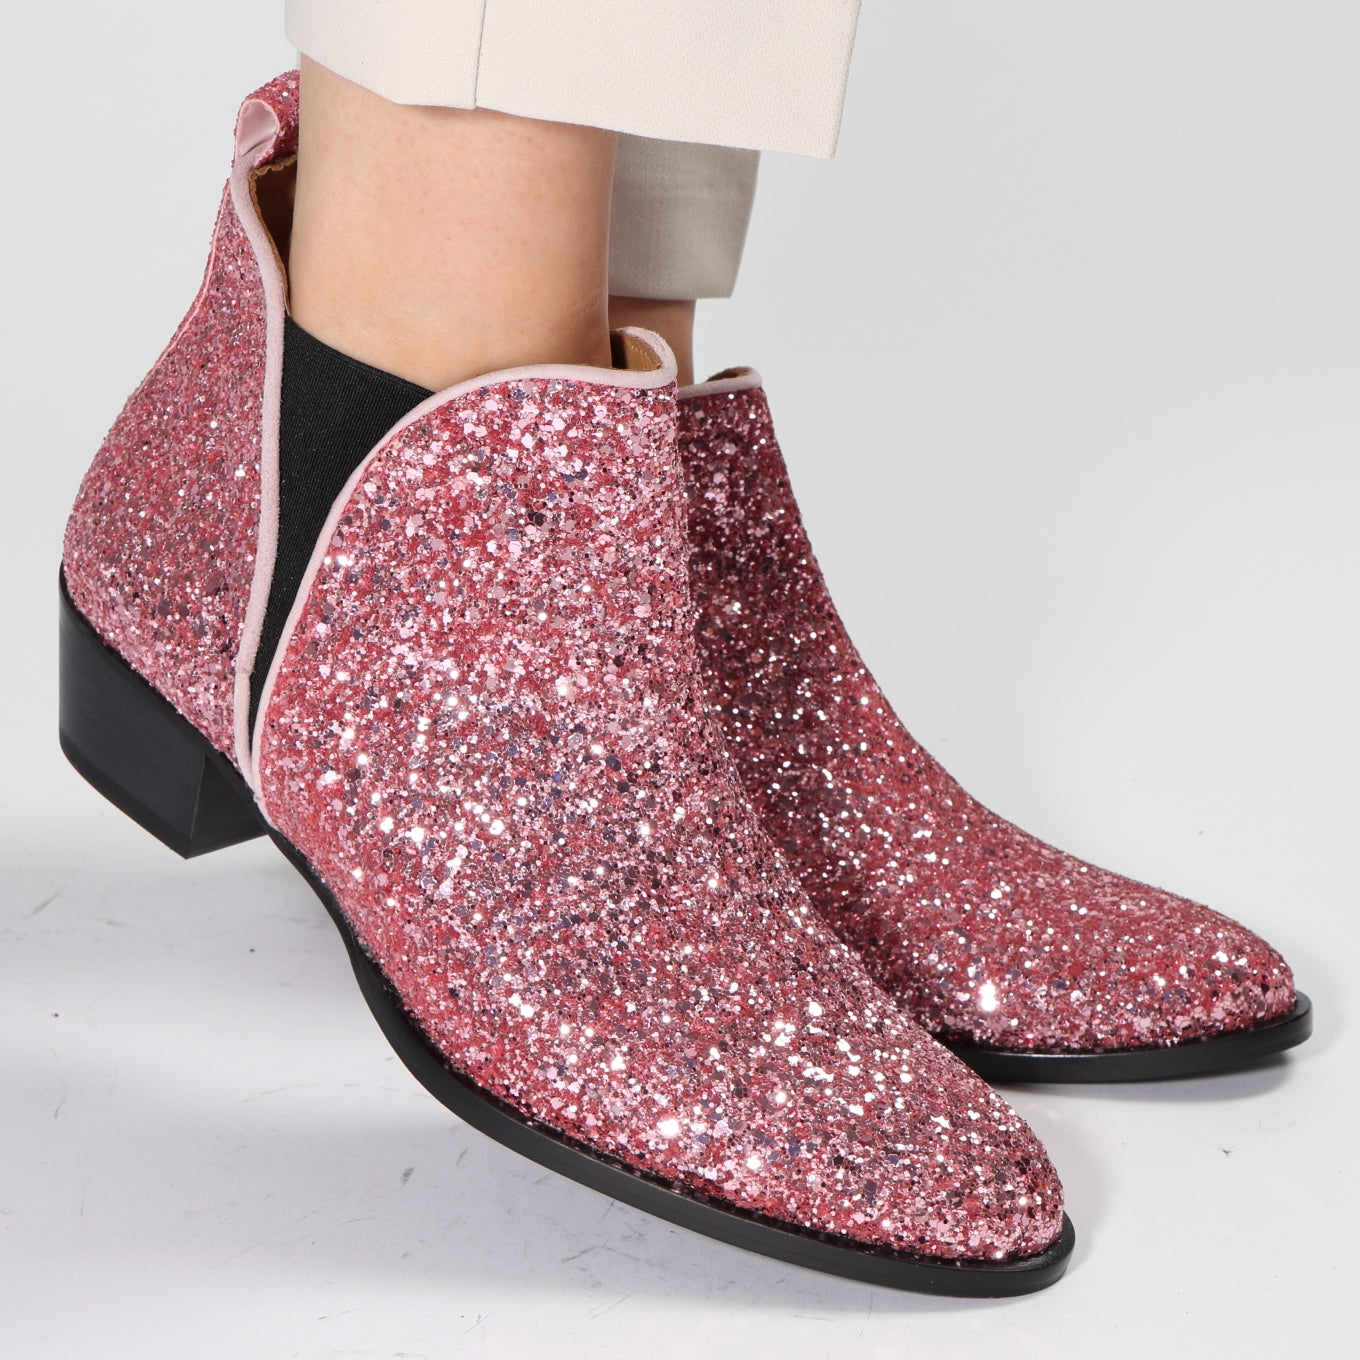 Reproduceren buurman Besmettelijke ziekte Pink glitter chelsea boot with low heel and handmade by Emma Go – EMMA GO  SHOES